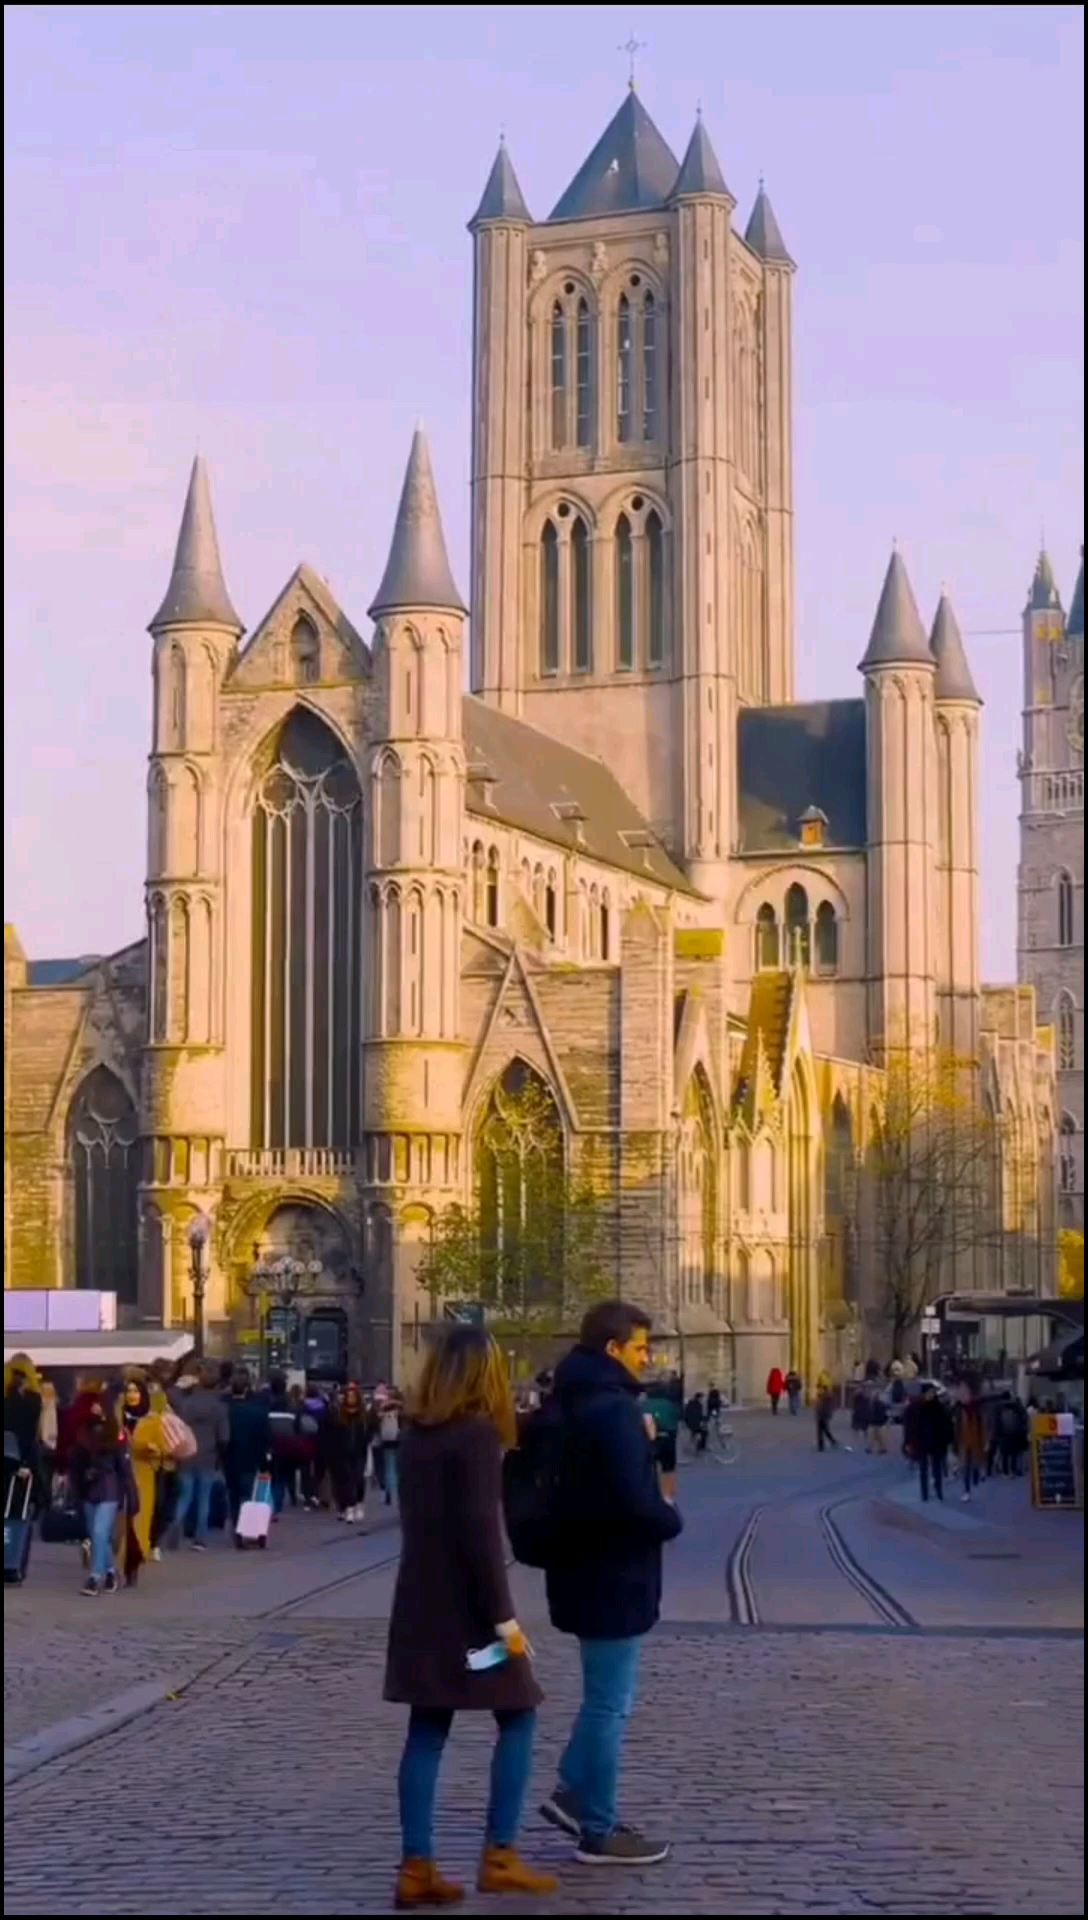 比利时游，体验多元文化！ #比利时旅游 #发现旅途的色彩 #情侣出游 #和朋友出去撒欢儿